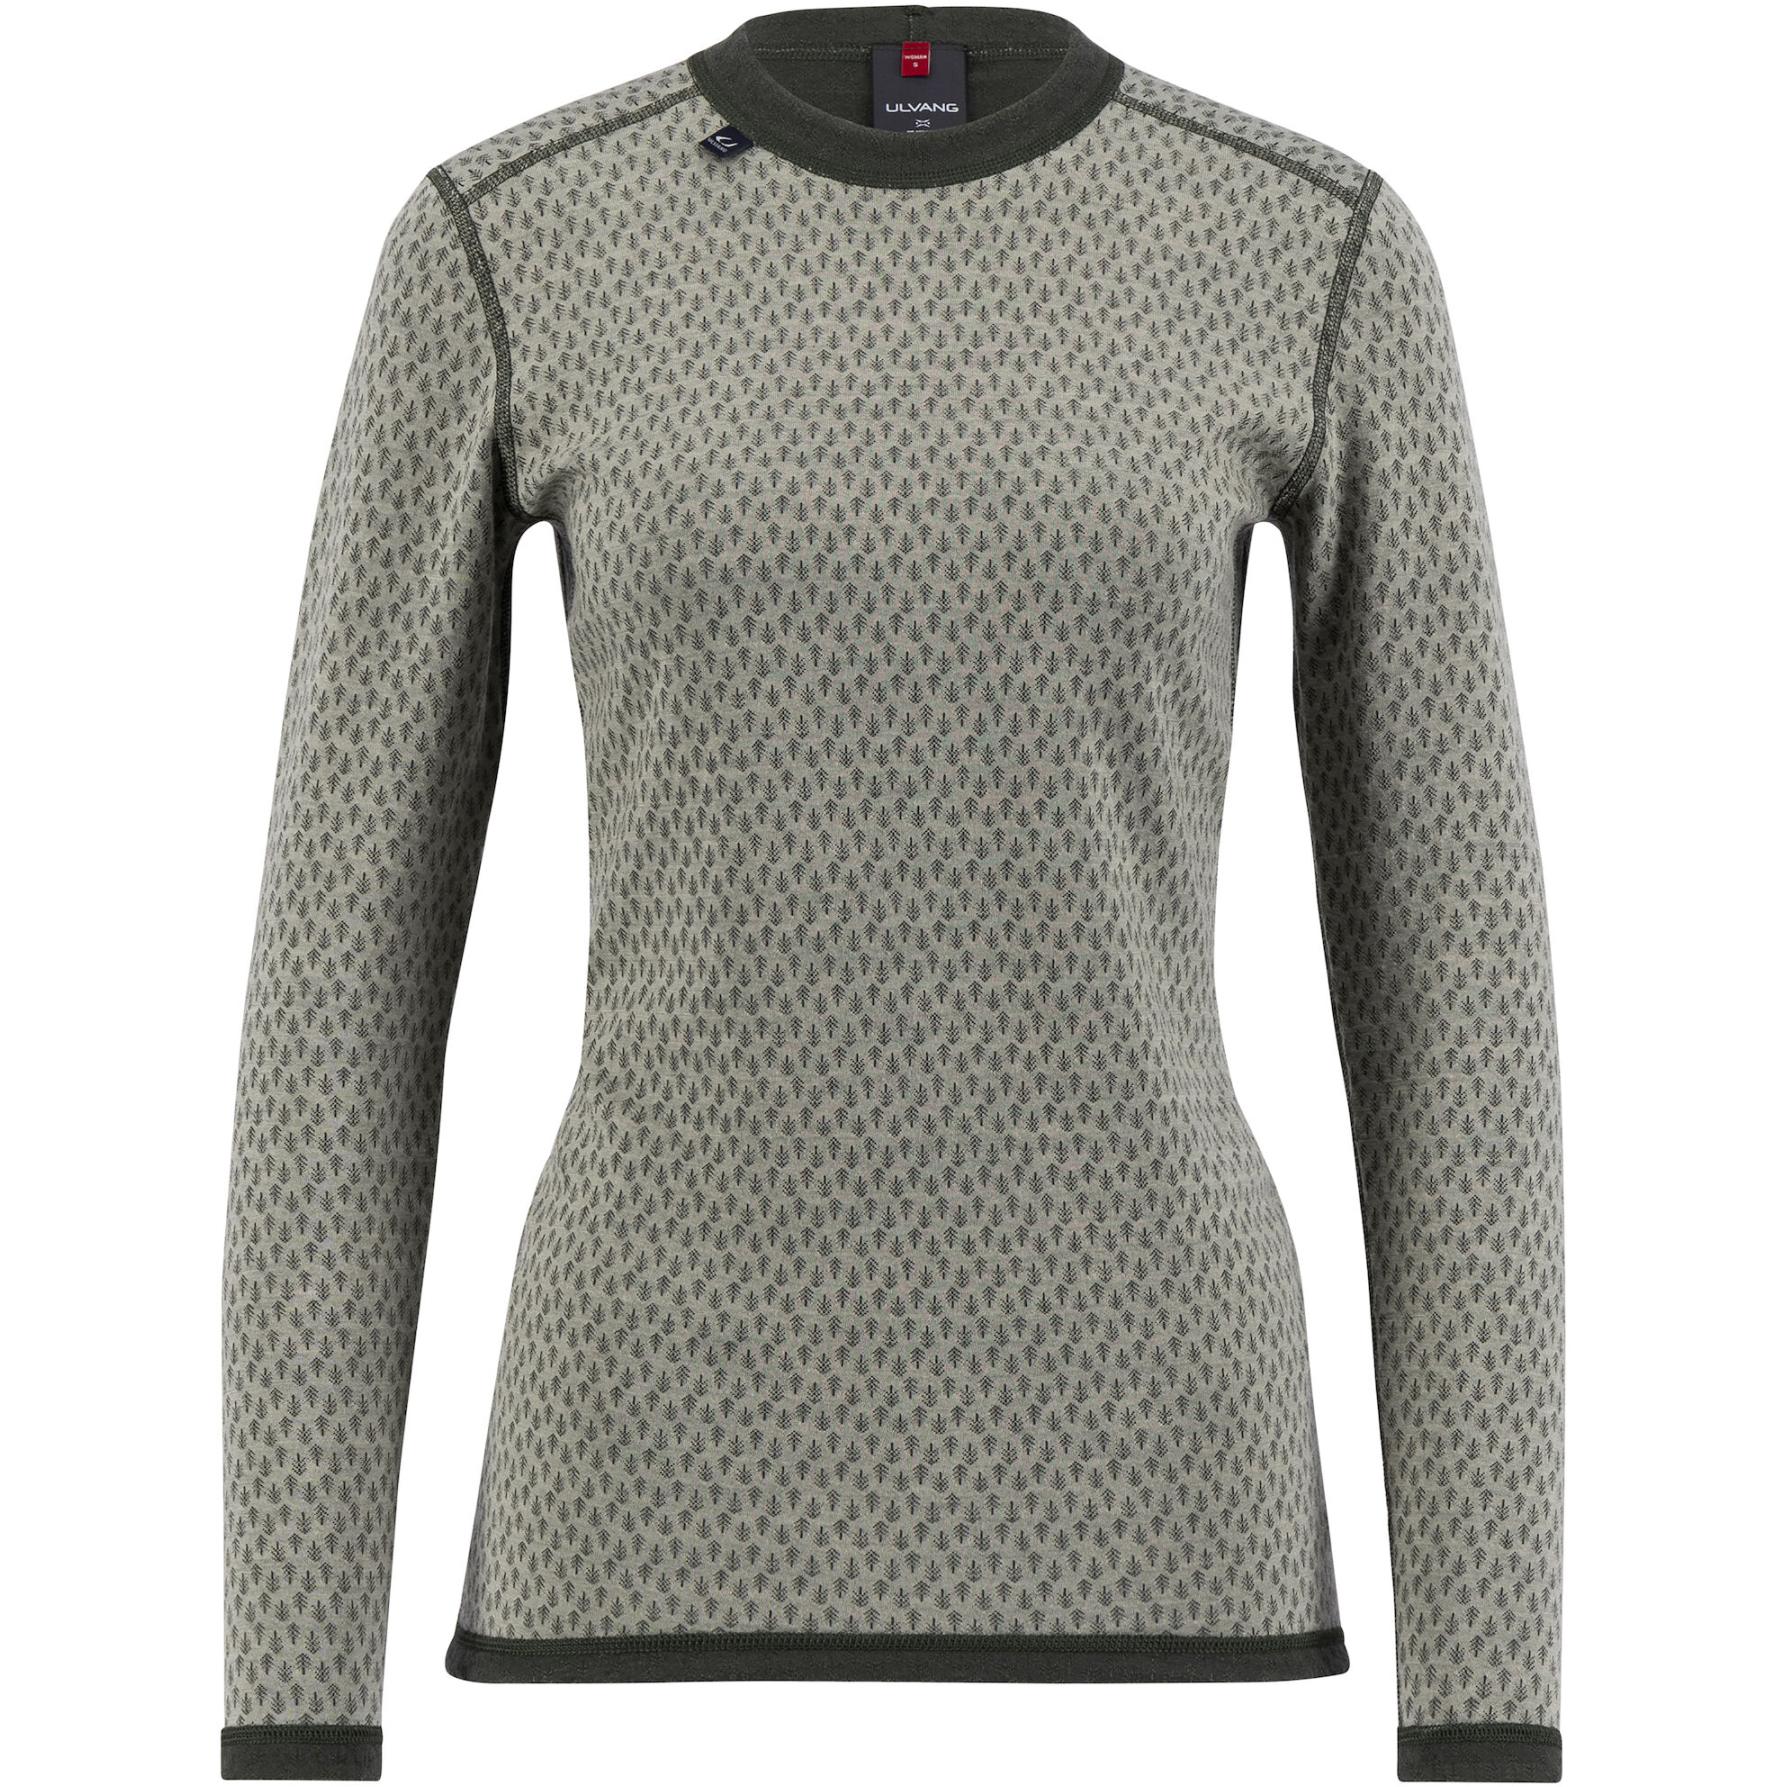 Produktbild von Ulvang Comfort 200 Rundhals-Langarmshirt Damen - Agate Grey/Urban Chic